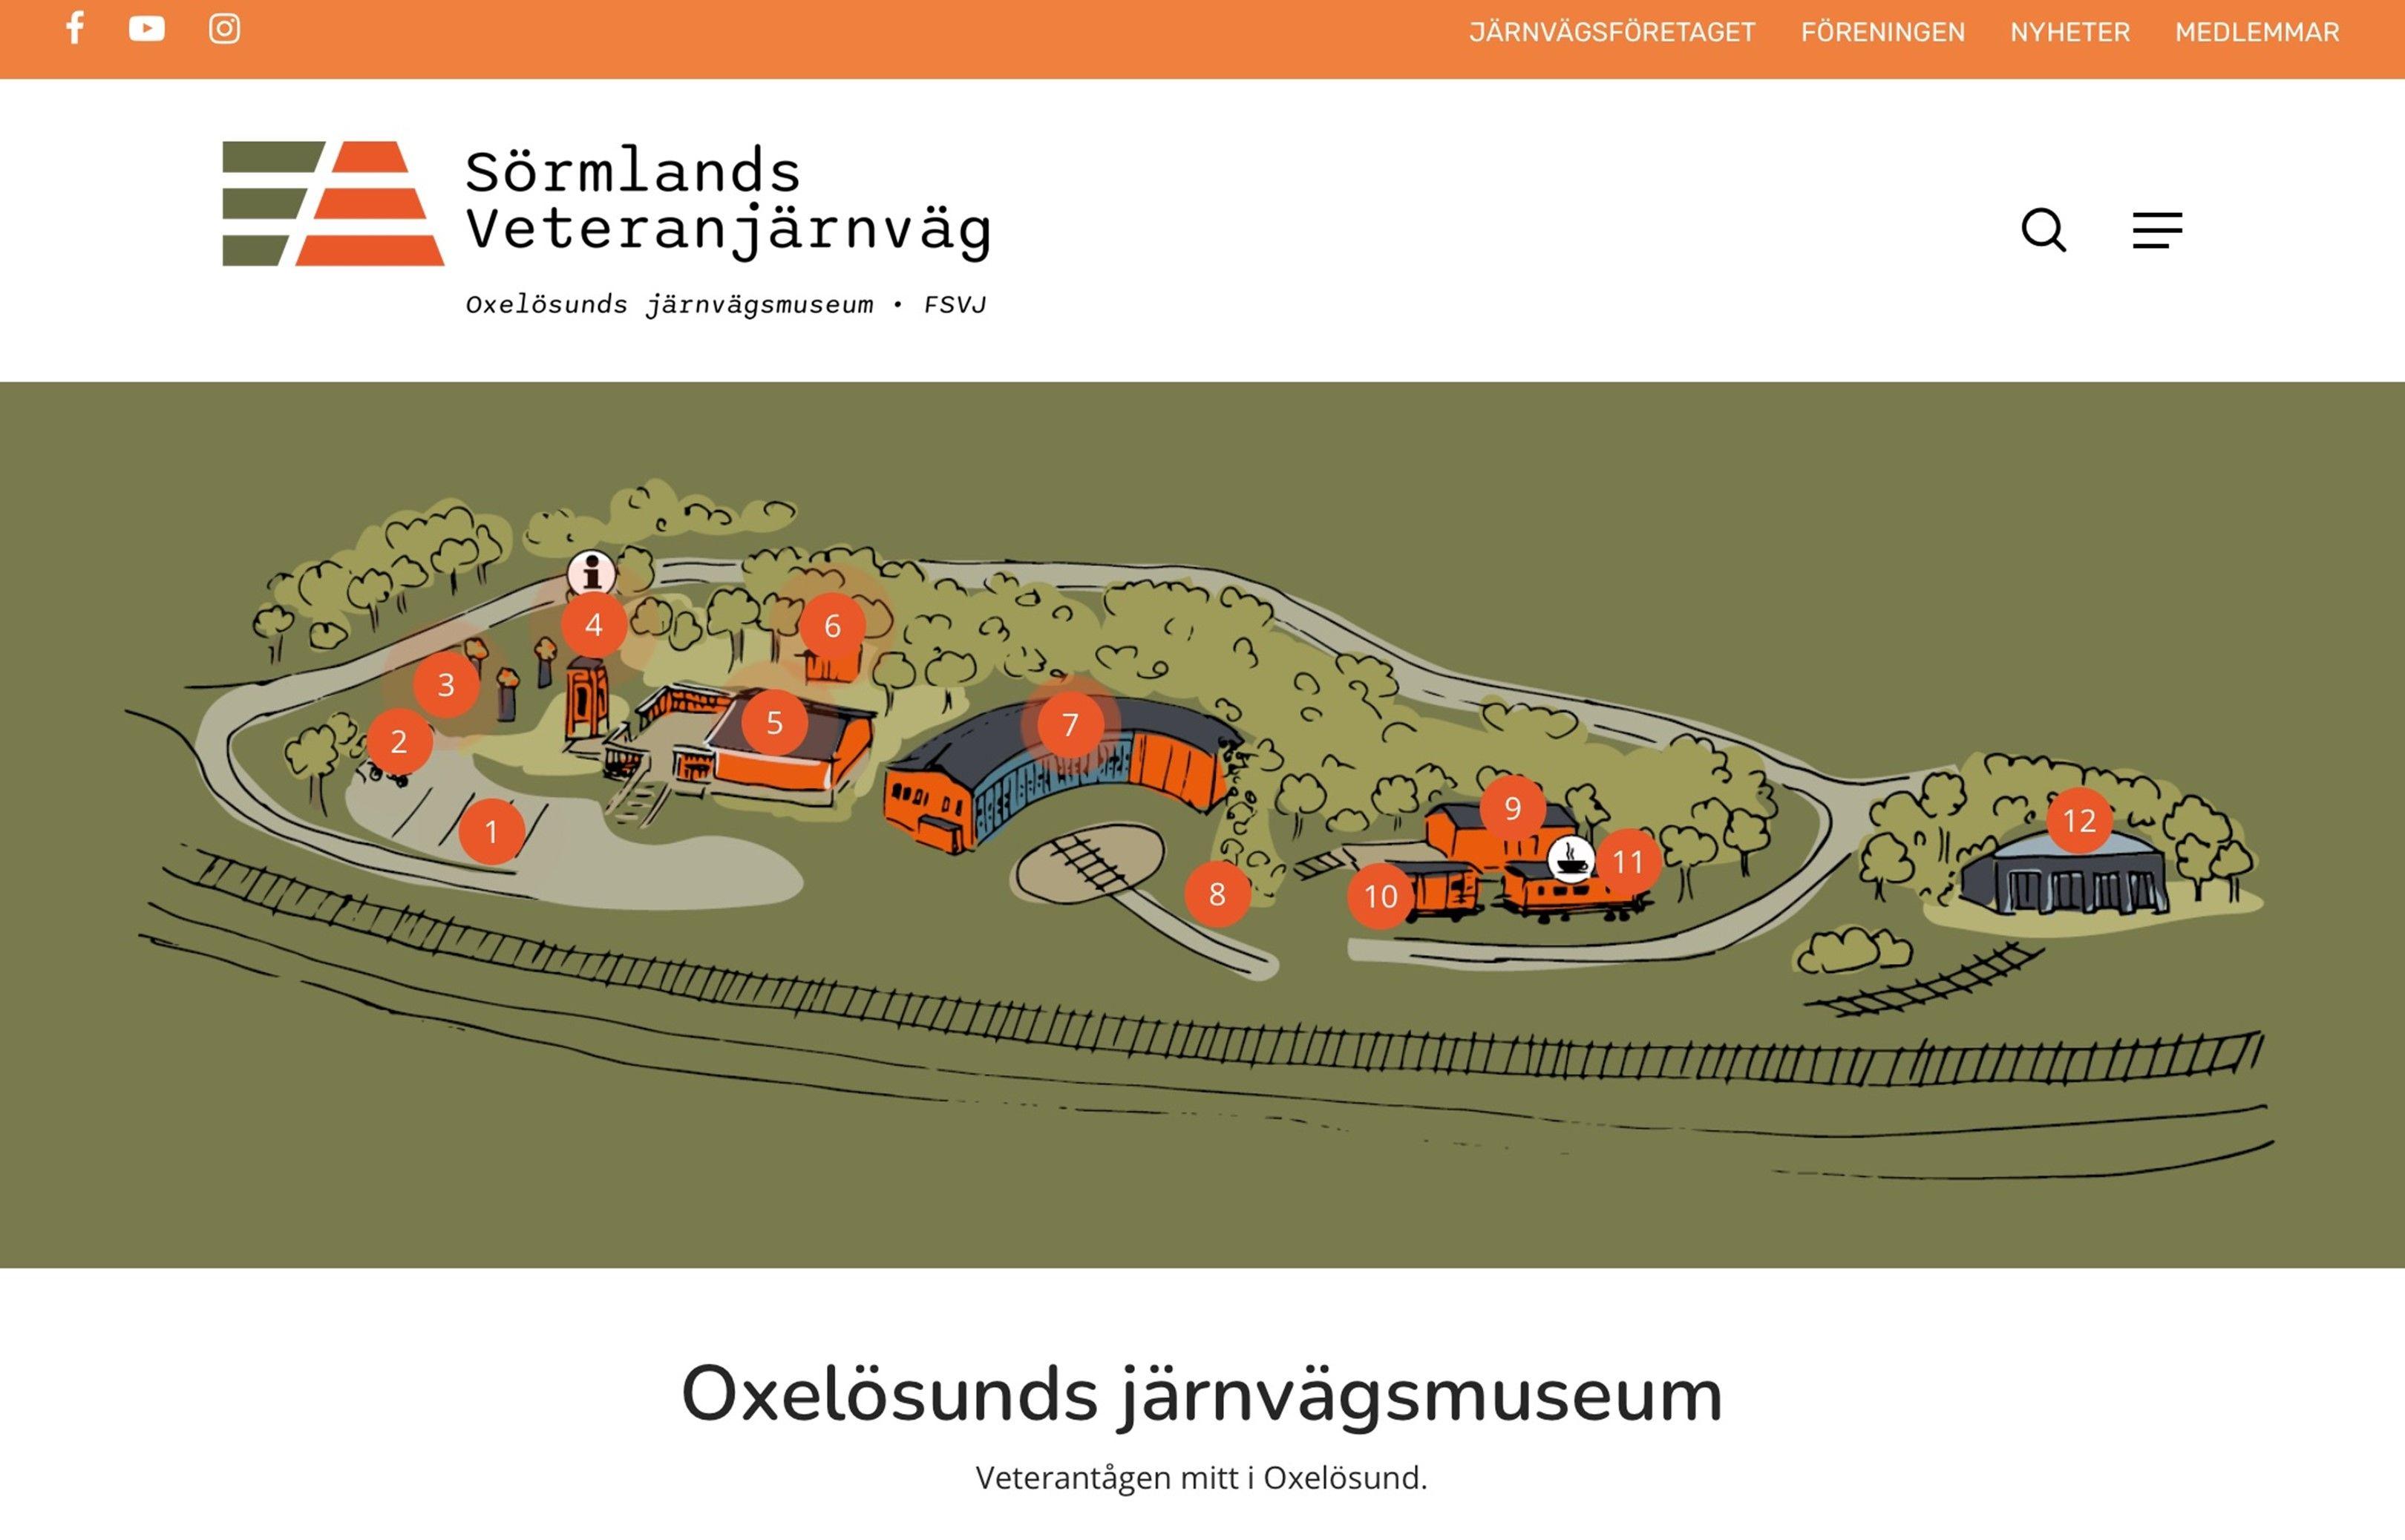 Bilden föreställer startsidan på internet för Södermanlands veteranjärnväg